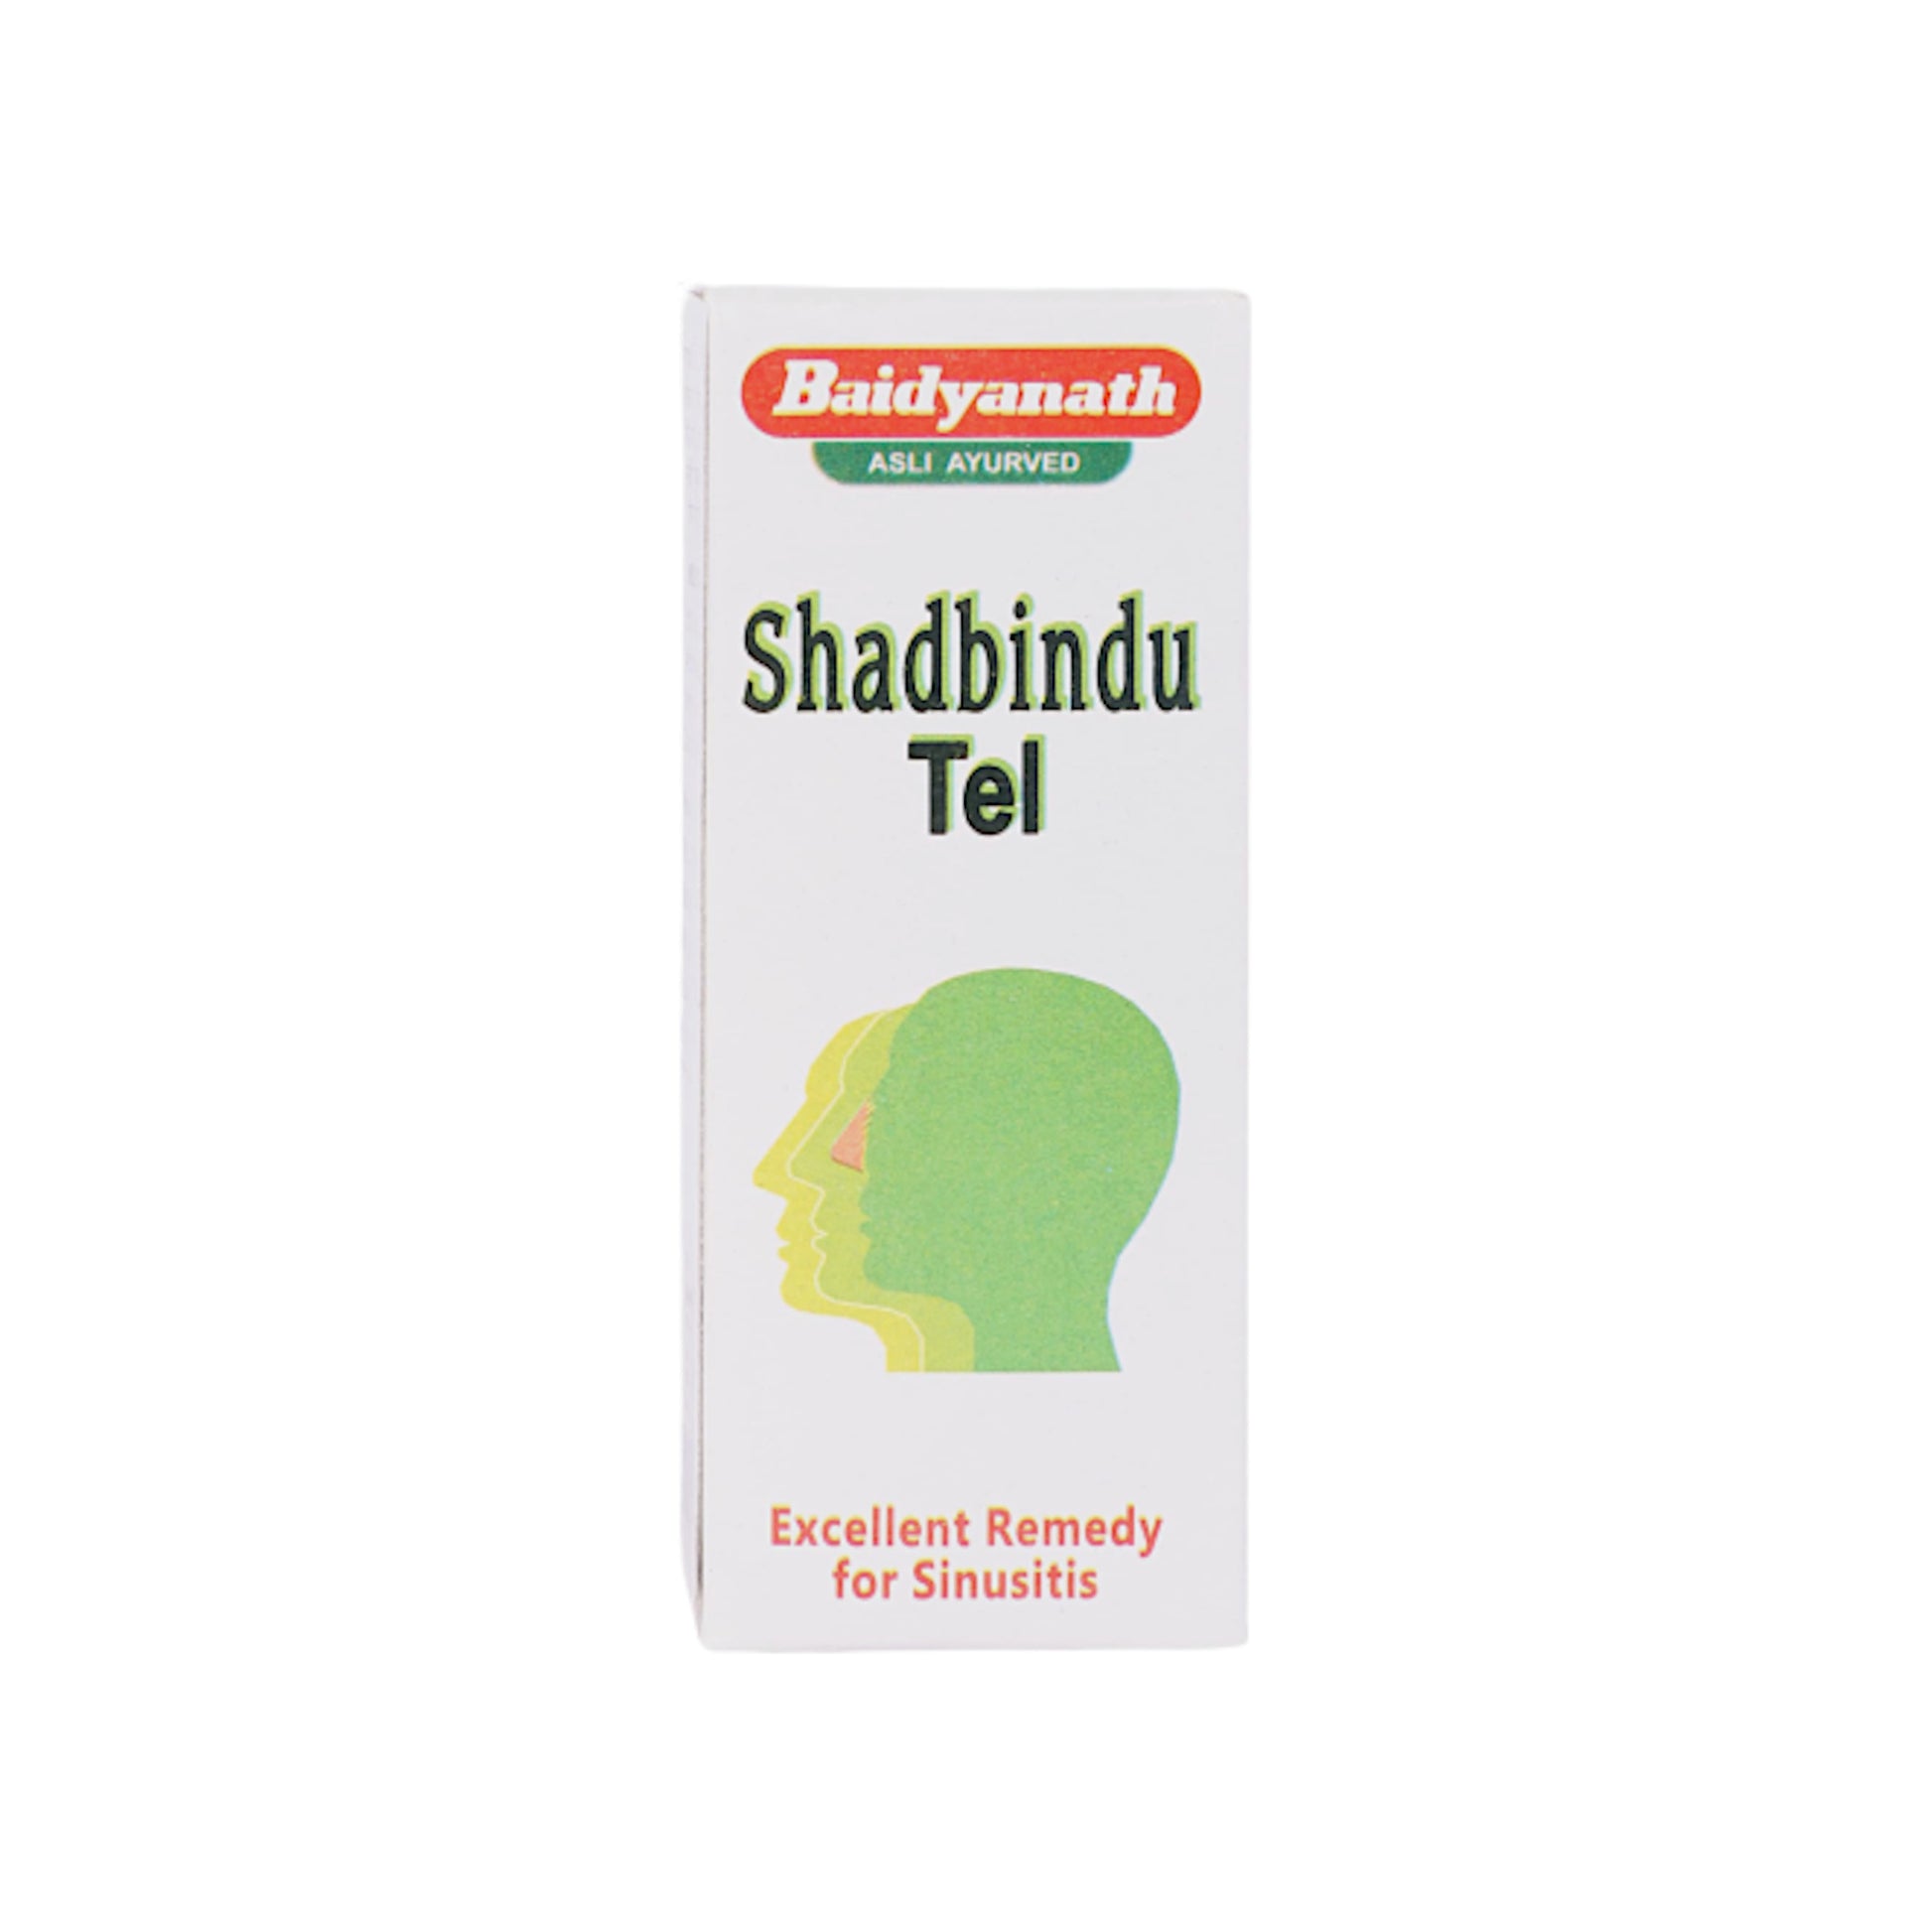 Image:  Baidyanath - Shadbindu Tail 50 ml: Ayurvedic nasal oil for sinus and respiratory well-being.